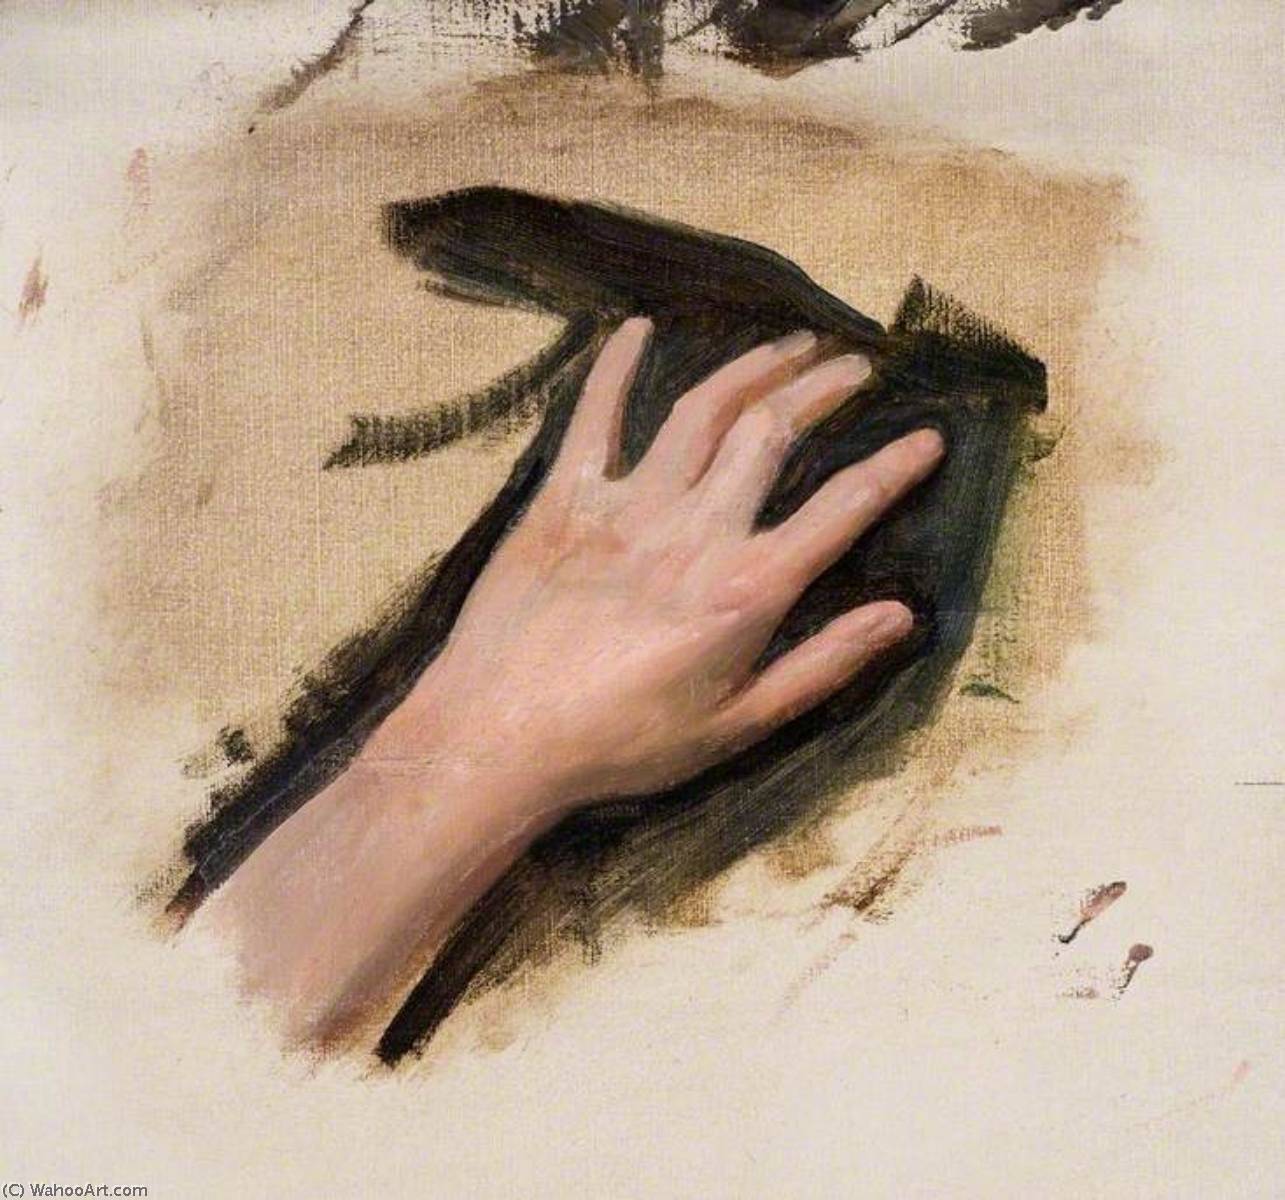 WikiOO.org - Εγκυκλοπαίδεια Καλών Τεχνών - Ζωγραφική, έργα τέχνης Brian Hatton - A Hand